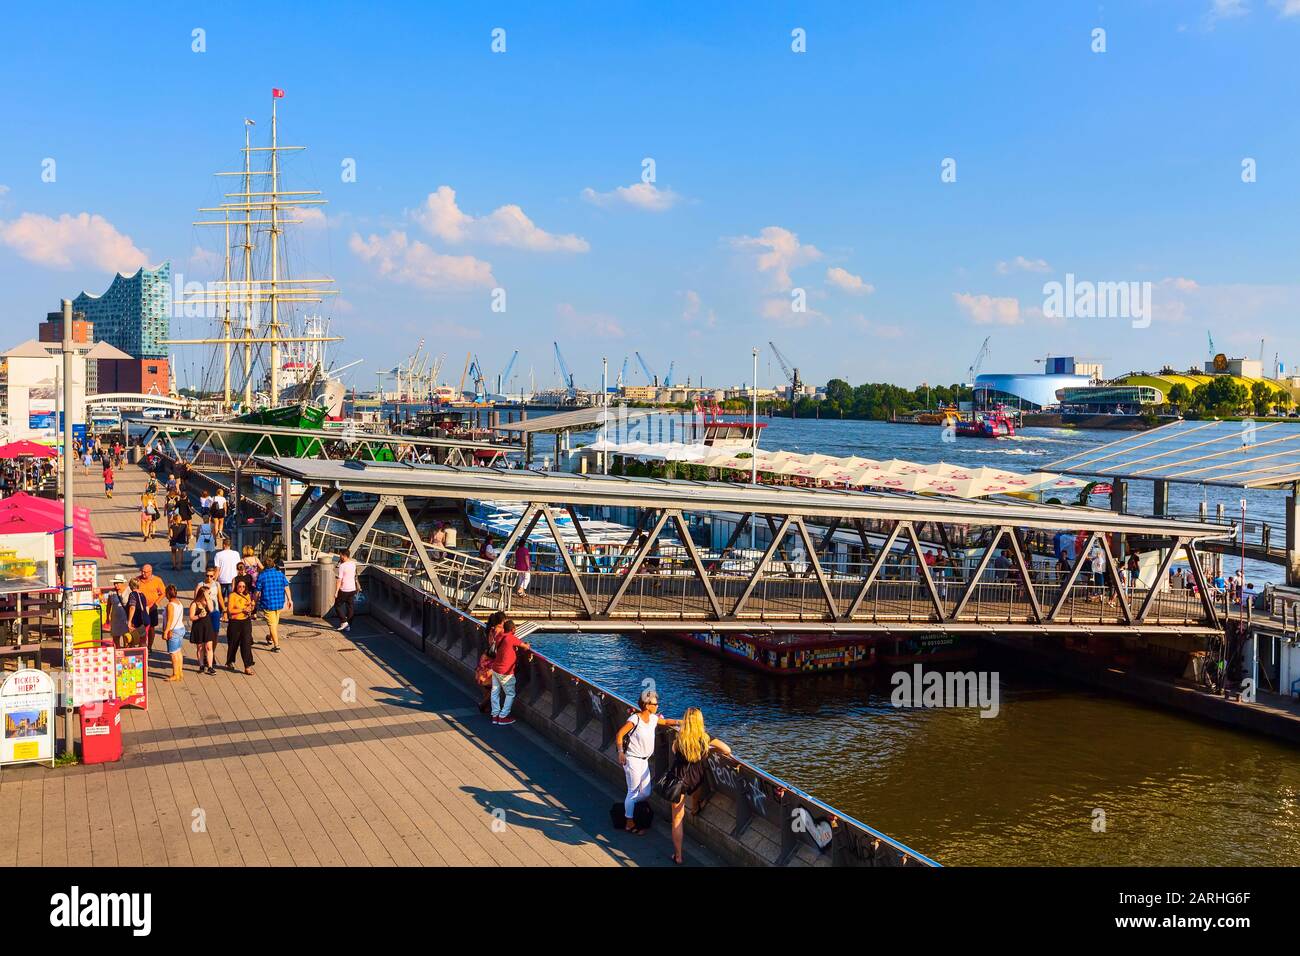 Hamburg, 26. Juli 2018: Altes Schiff mit Restaurant an der Elbe, Hamburger Landungsbrücken Hafenpanorama Stockfoto